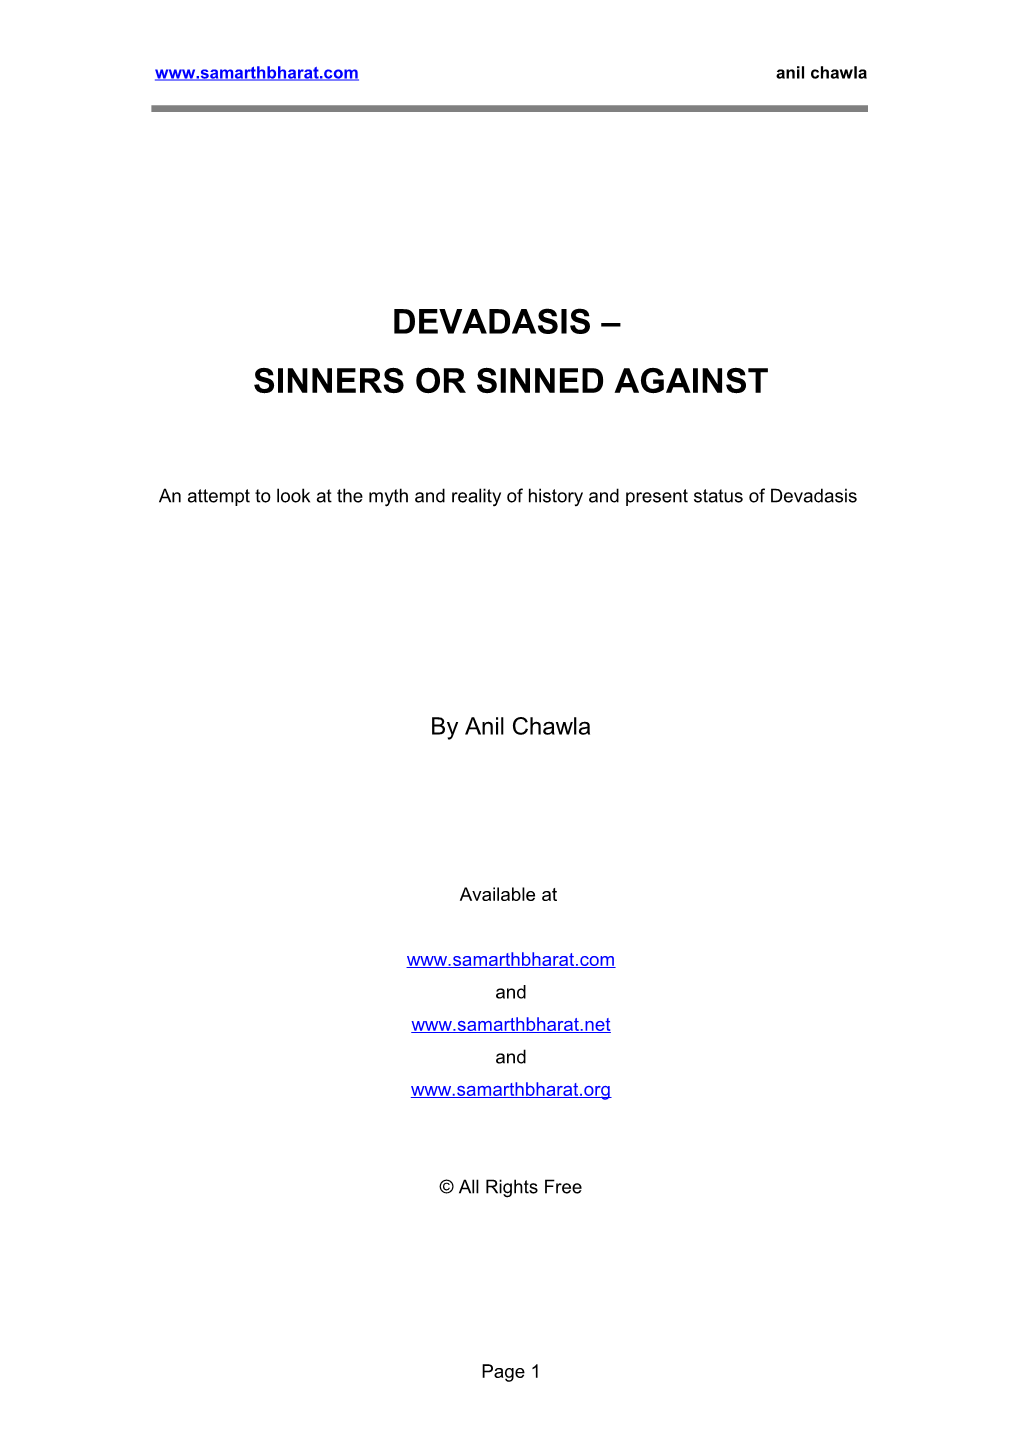 Devadasis - Sinners Or Sinned Against